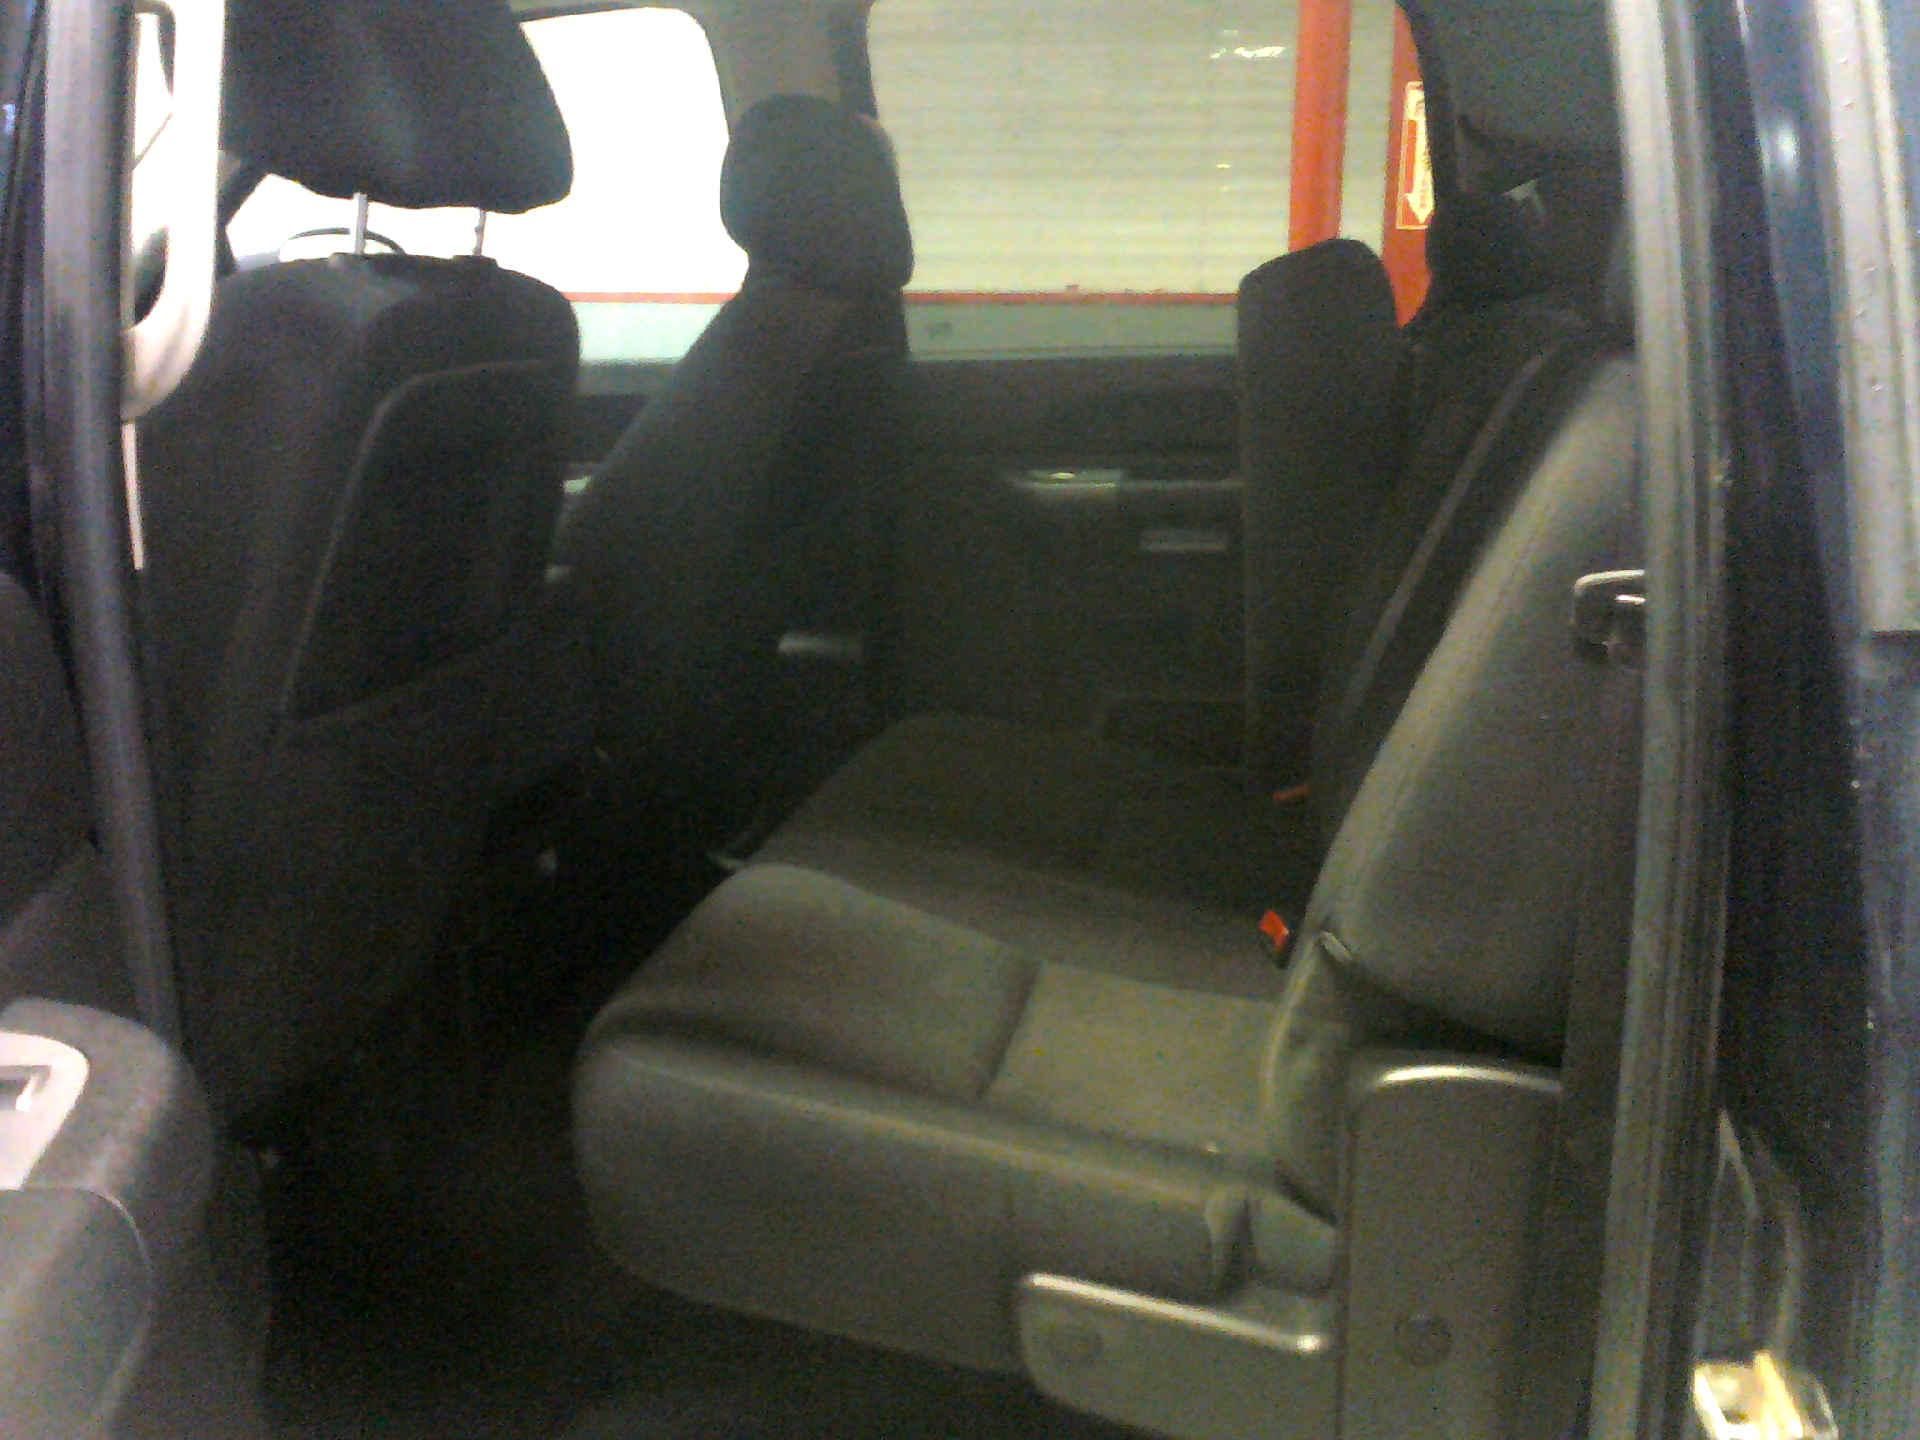 2012 GMC SIERRA 2500HD SLE CREW CAB 4WD 6.0L V8 OHV 16V FFV AUTOMATIC SN:1GT120CG4CF145969 OPTIONS: - Image 6 of 9